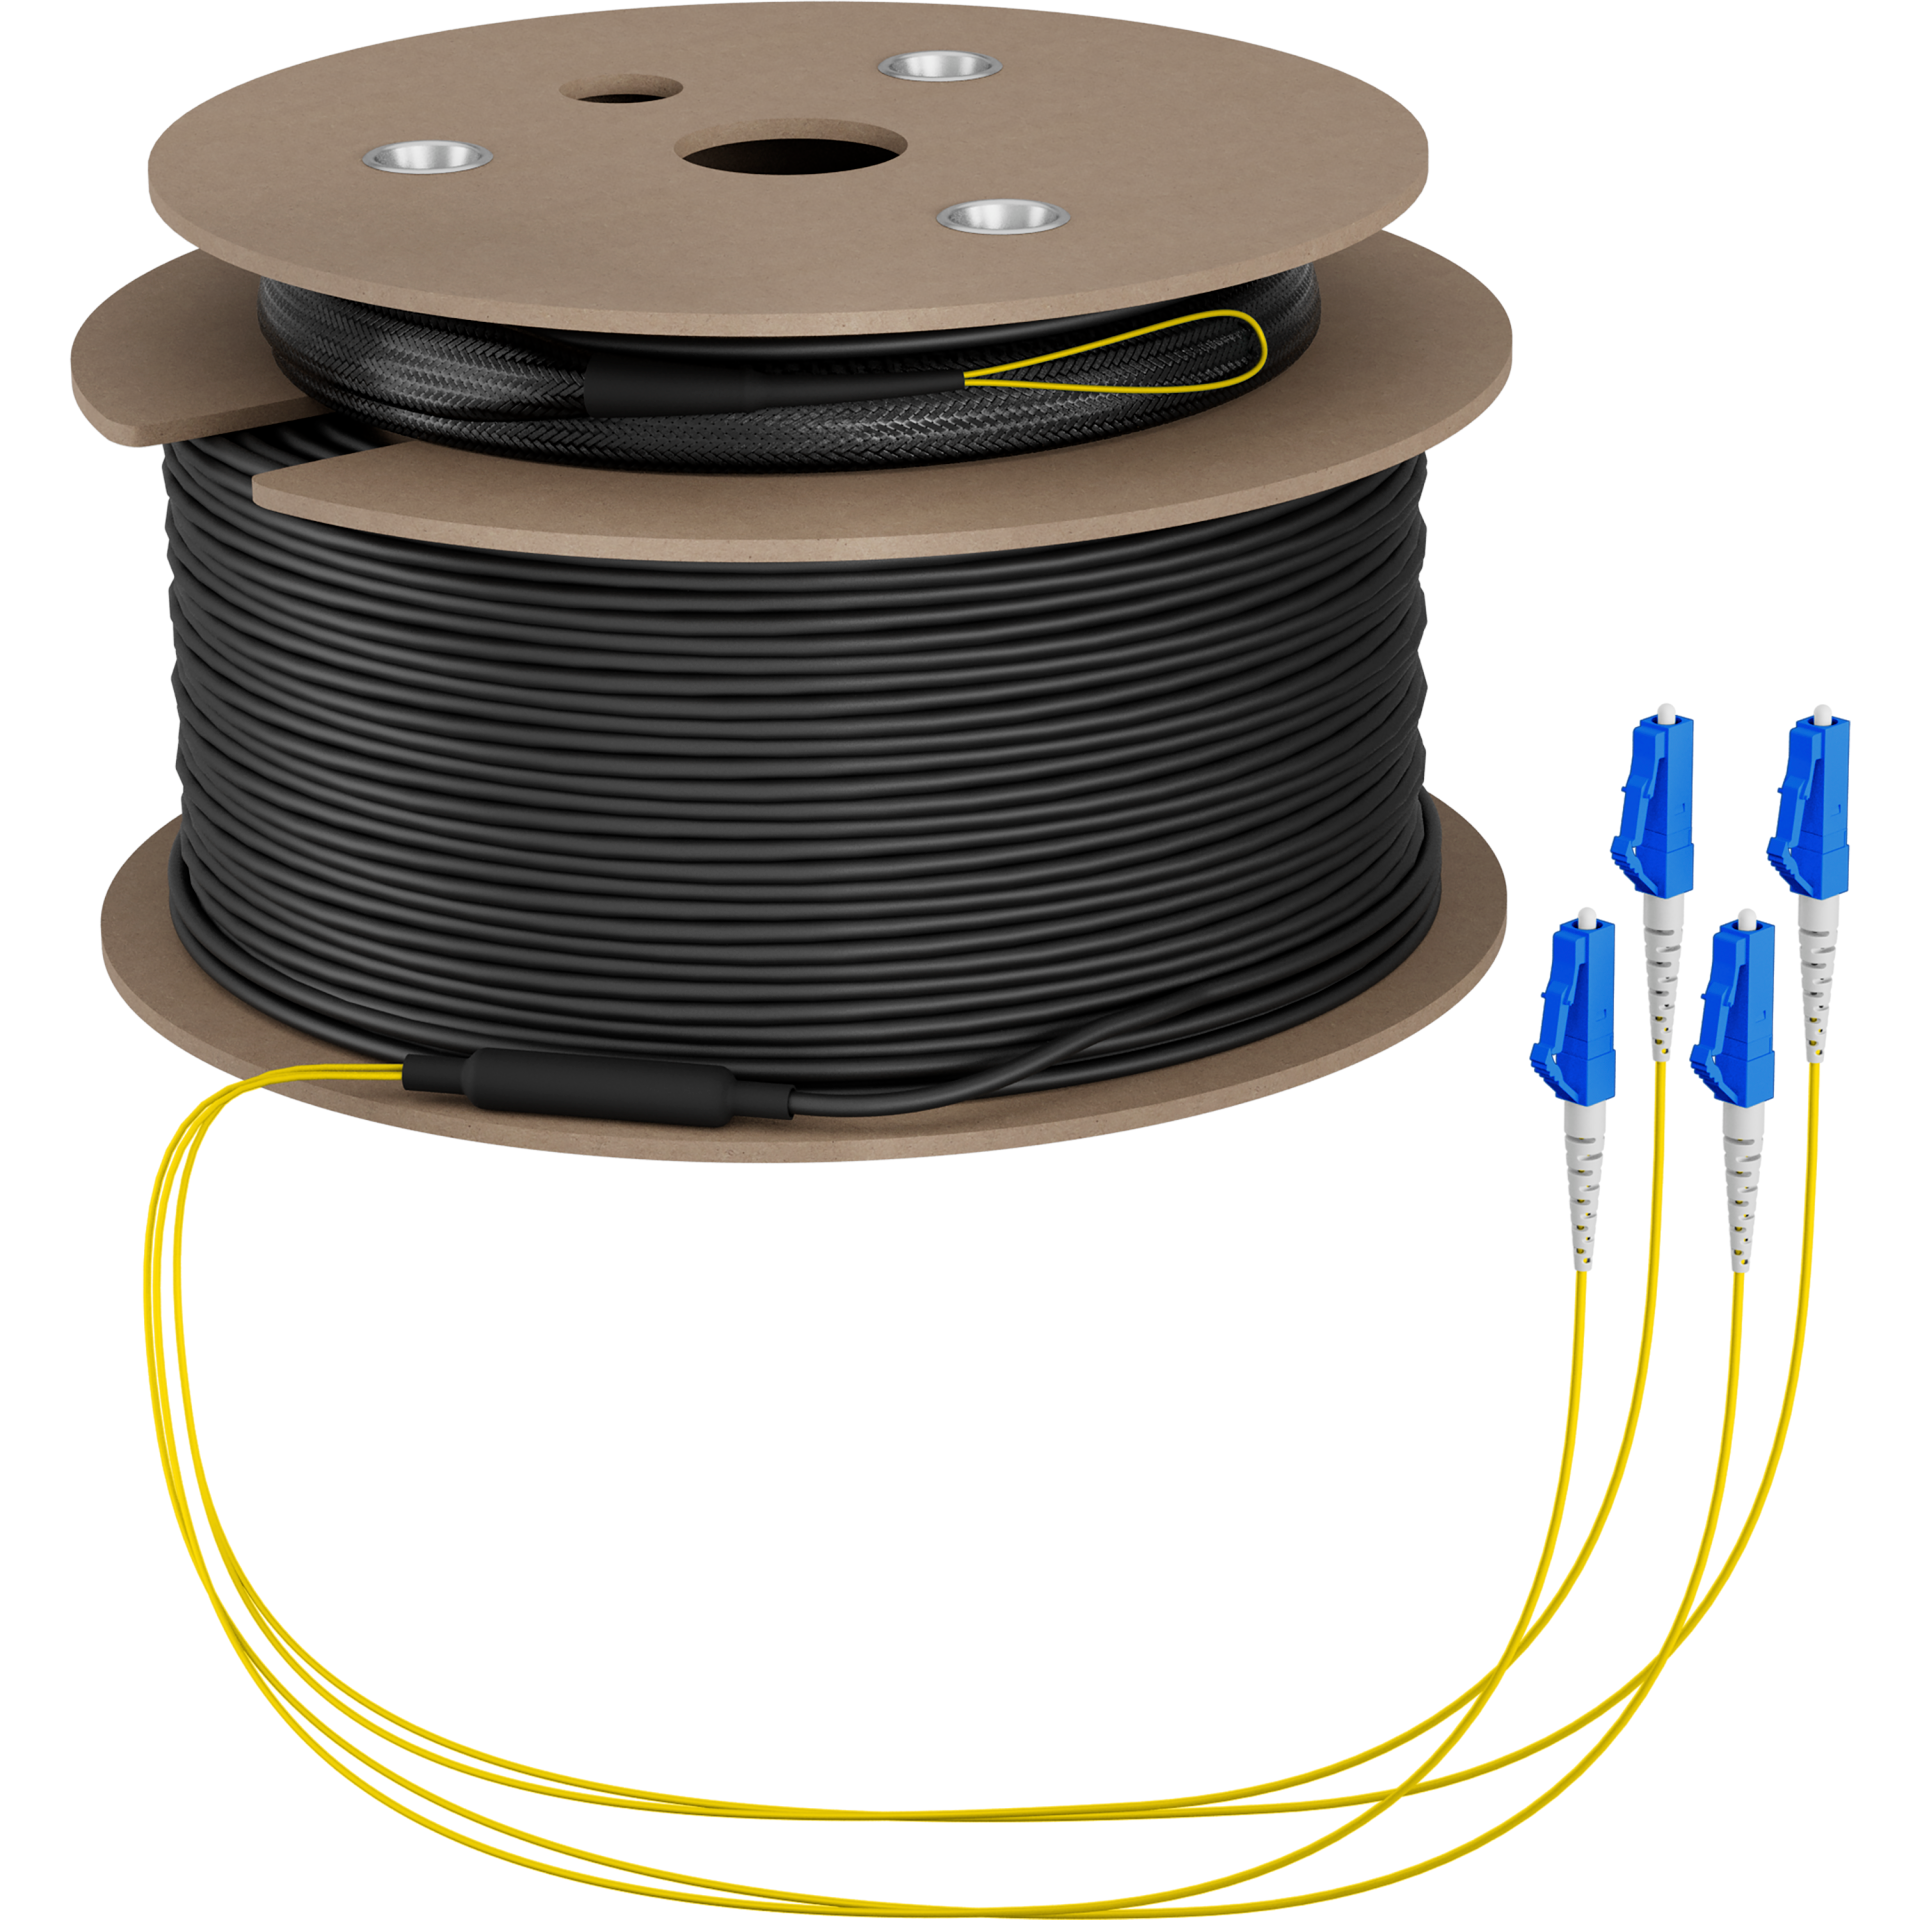 Trunk cable U-DQ(ZN)BH OS2 4E (1x4) LC-LC,80m Dca LSZH G675A1